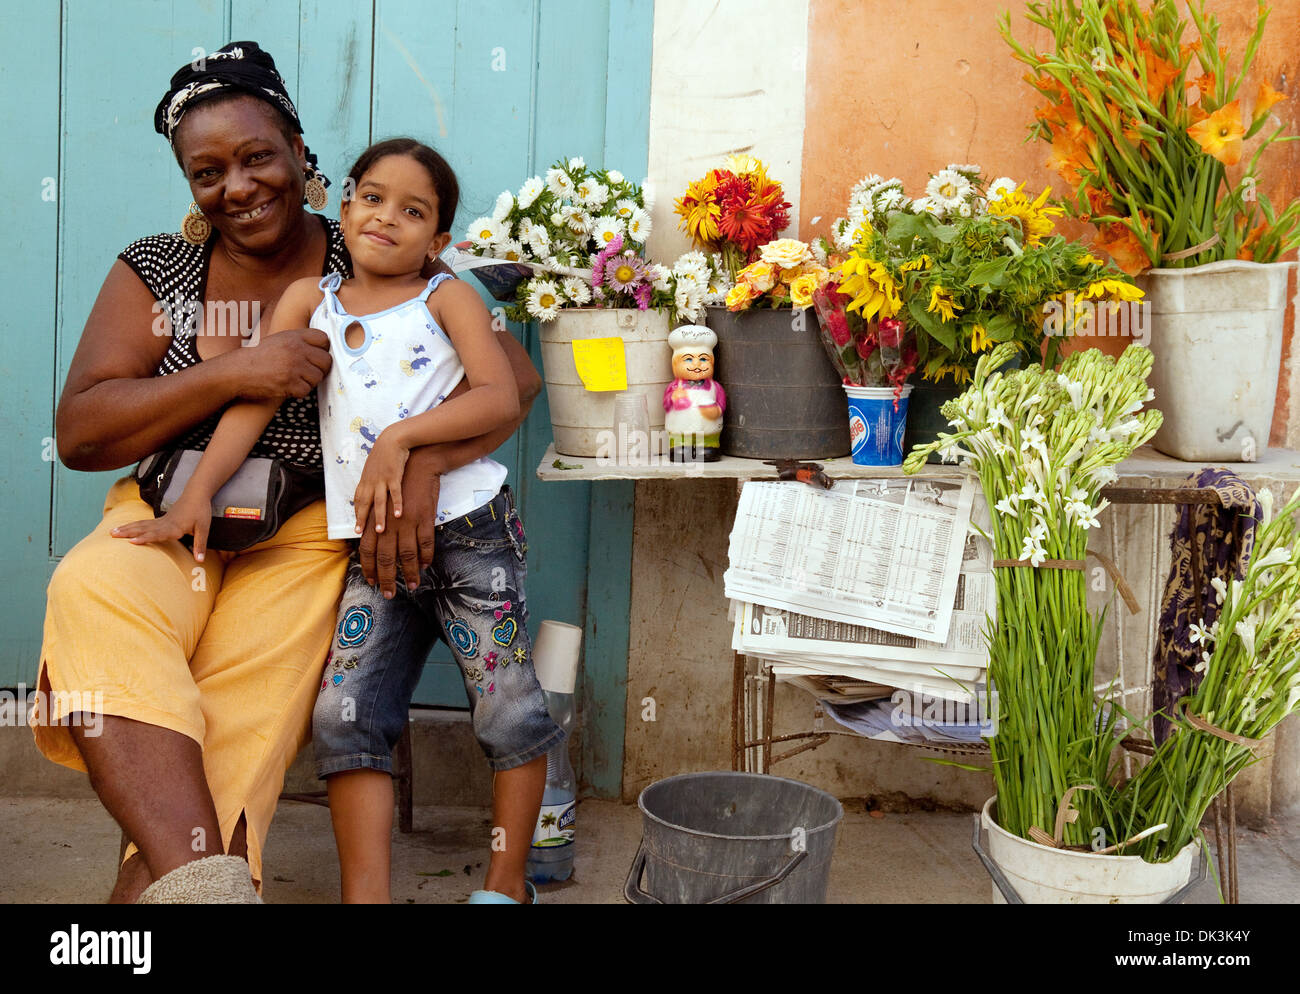 Kubanischen Mutter und Tochter mit ihrer Blüte abstirbt, Street Market, Brasil St., Havanna, Kuba, Karibik Lateinamerika Stockfoto